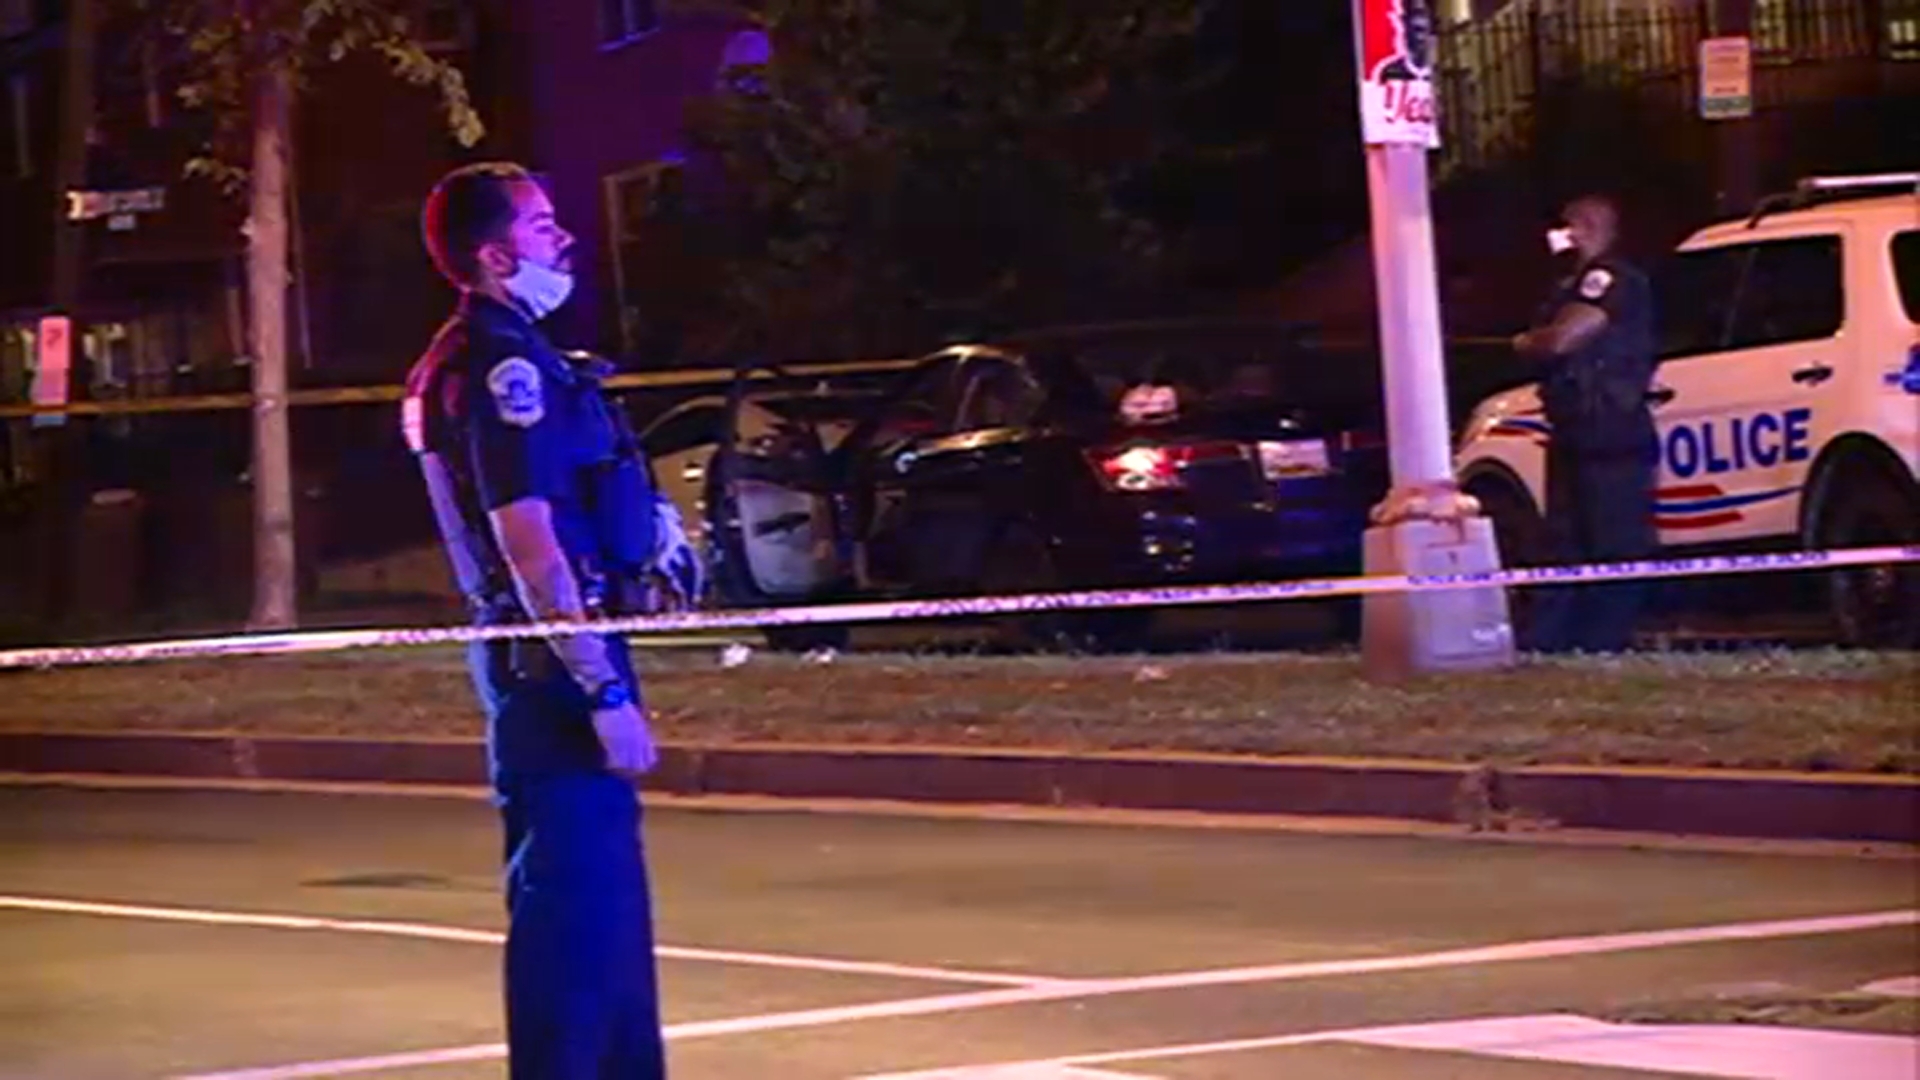 4-Year-Old Girl Among 4 People Hurt in Rash of DC Shootings